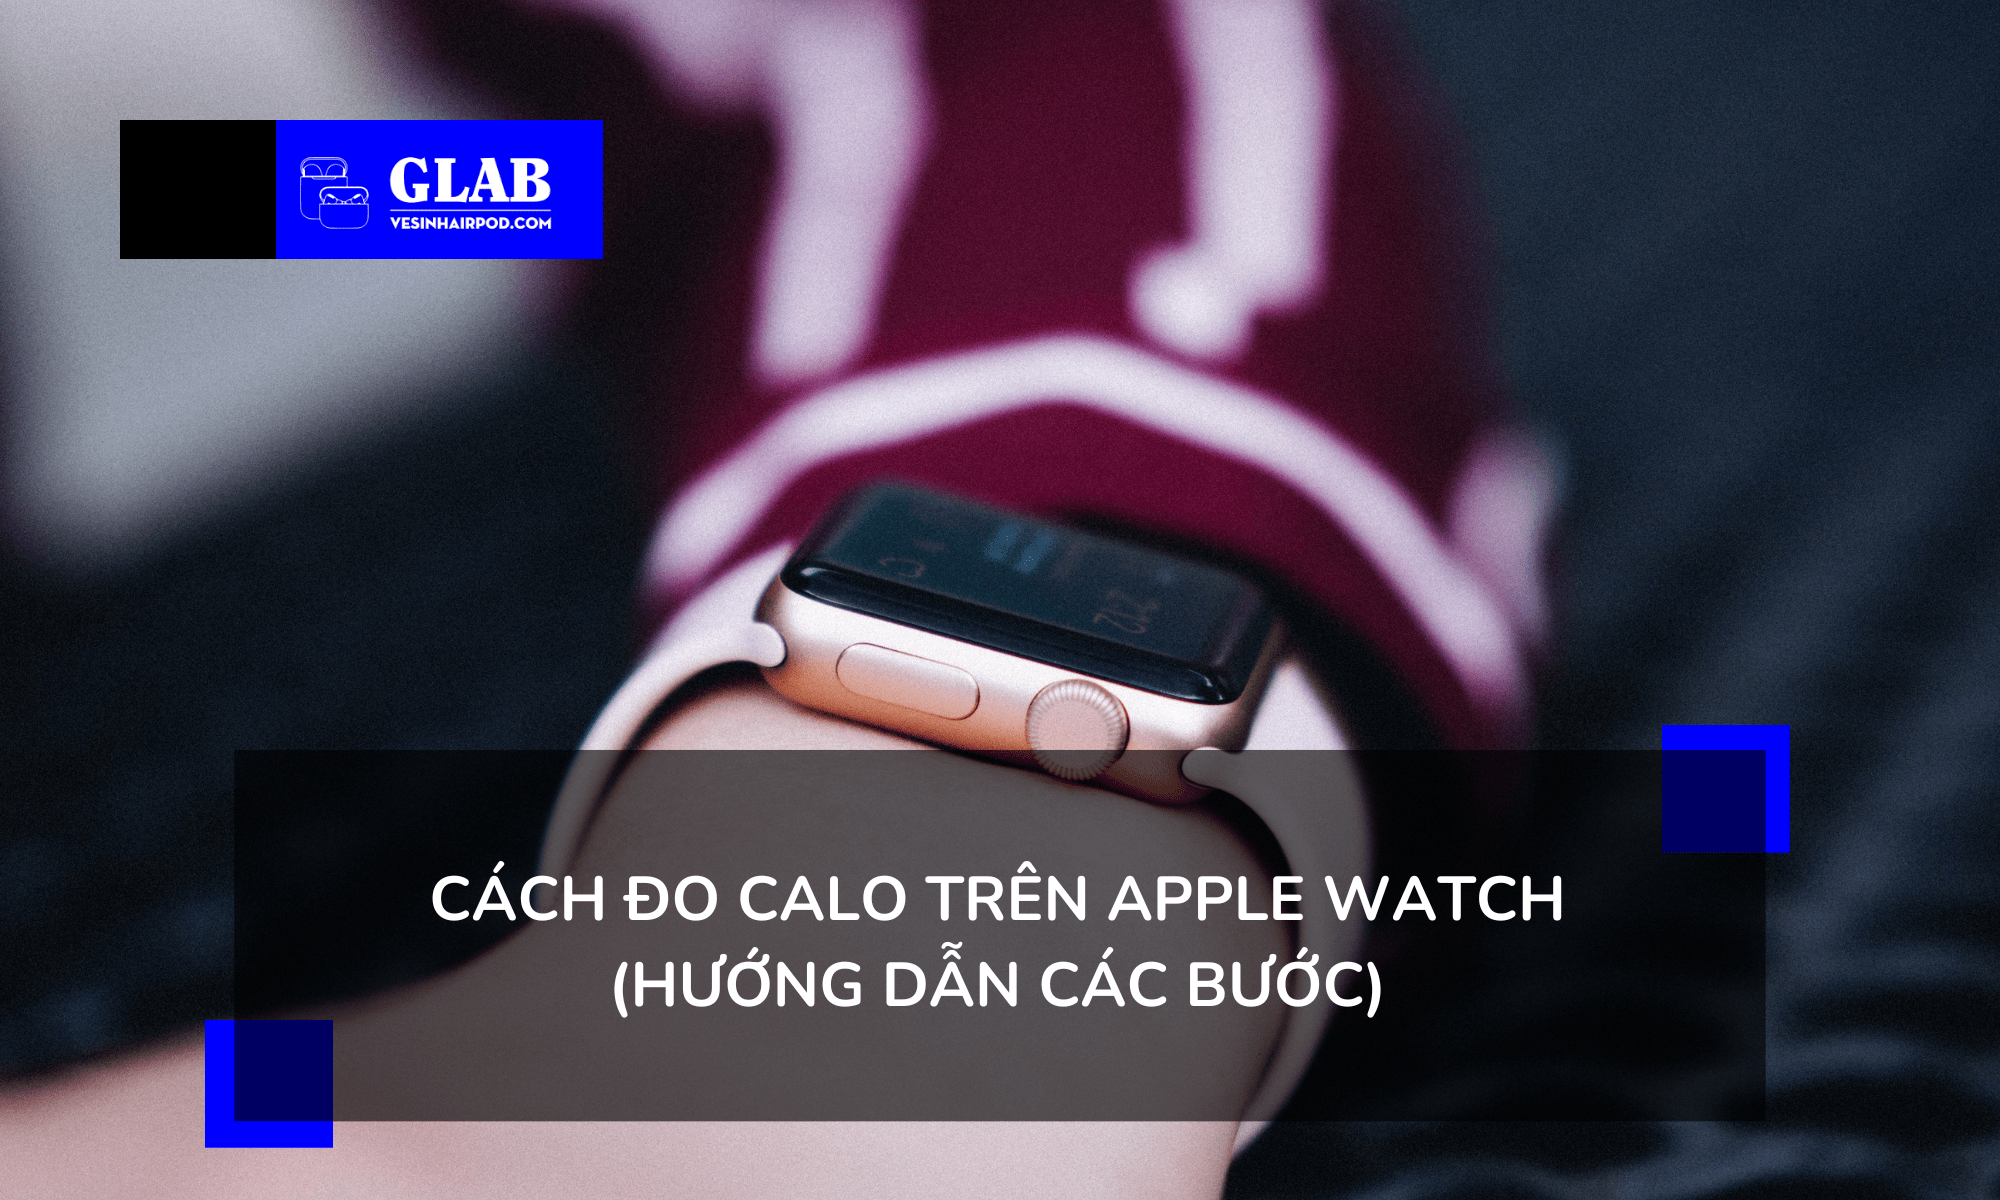 do-calories-tren-apple-watch